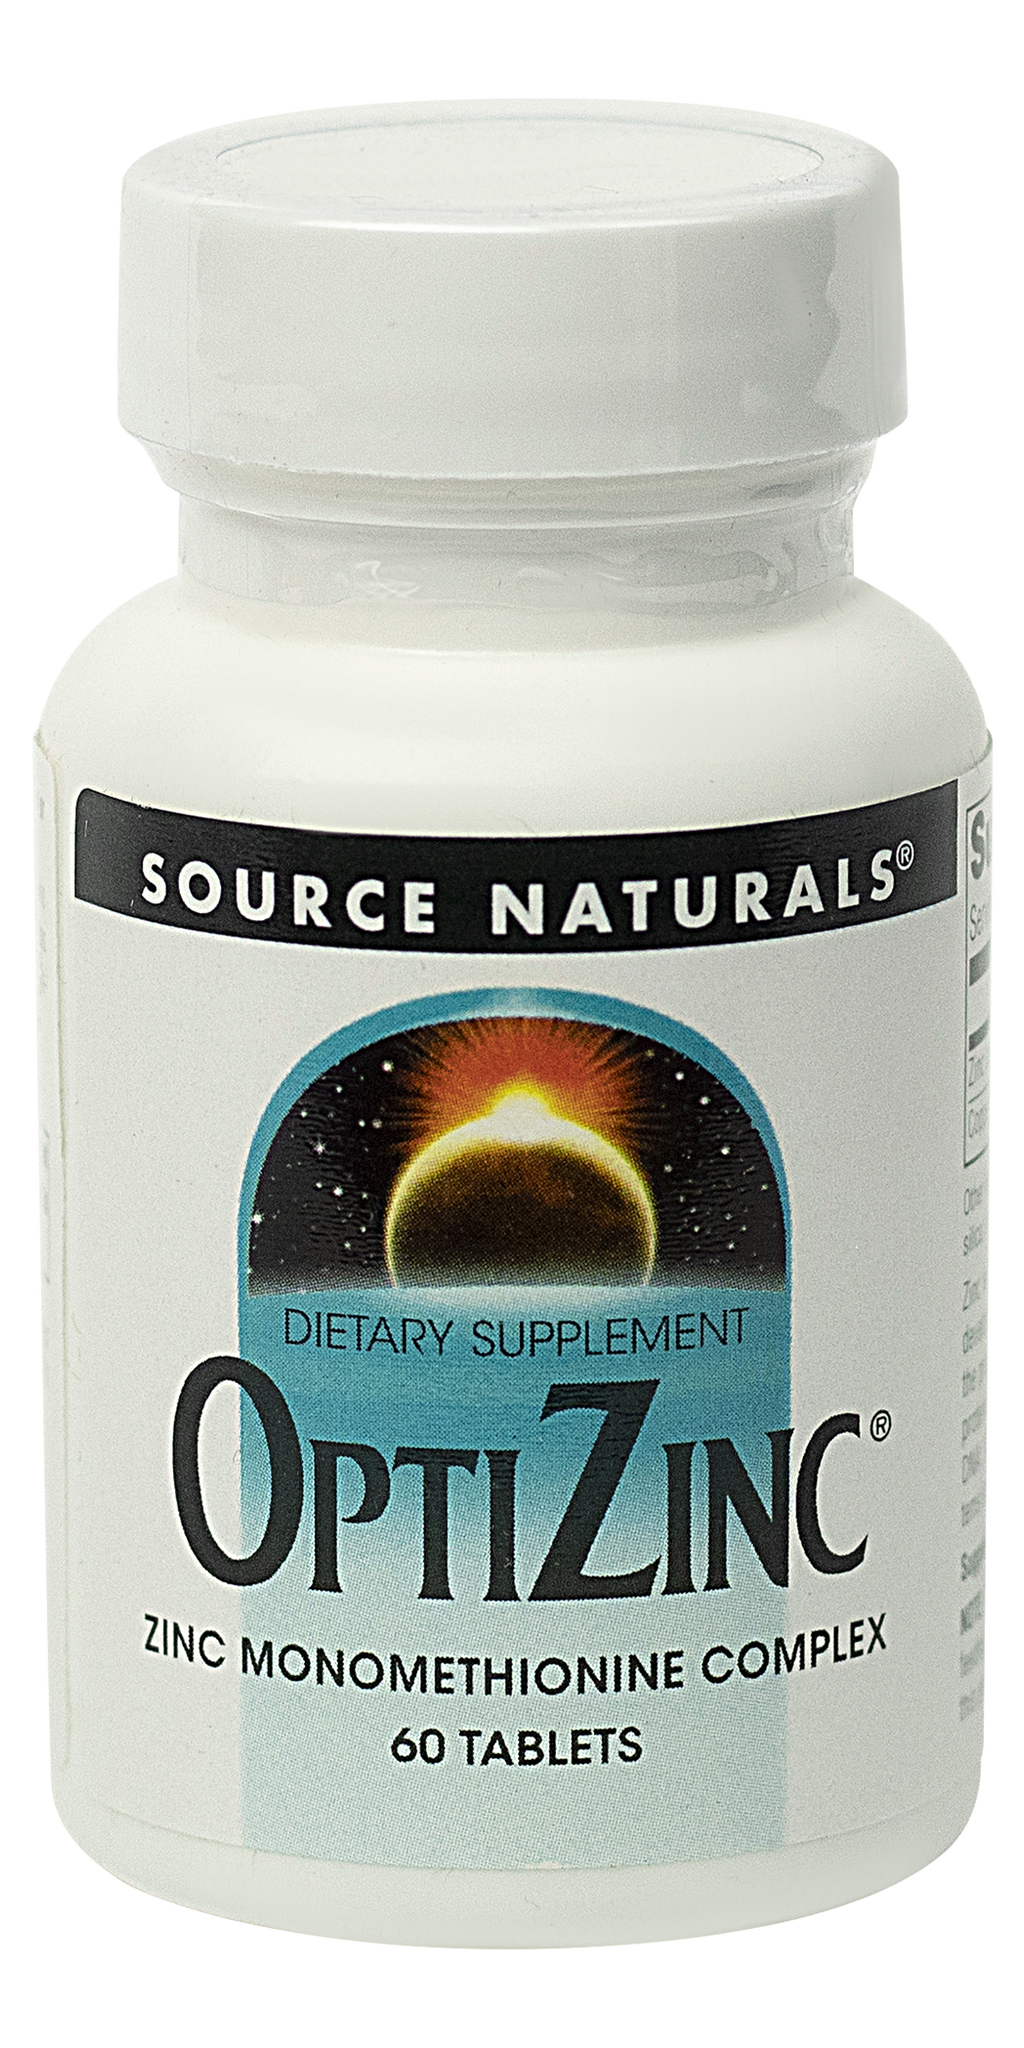 White bottle of OptiZinc dietary supplement 60 tablets